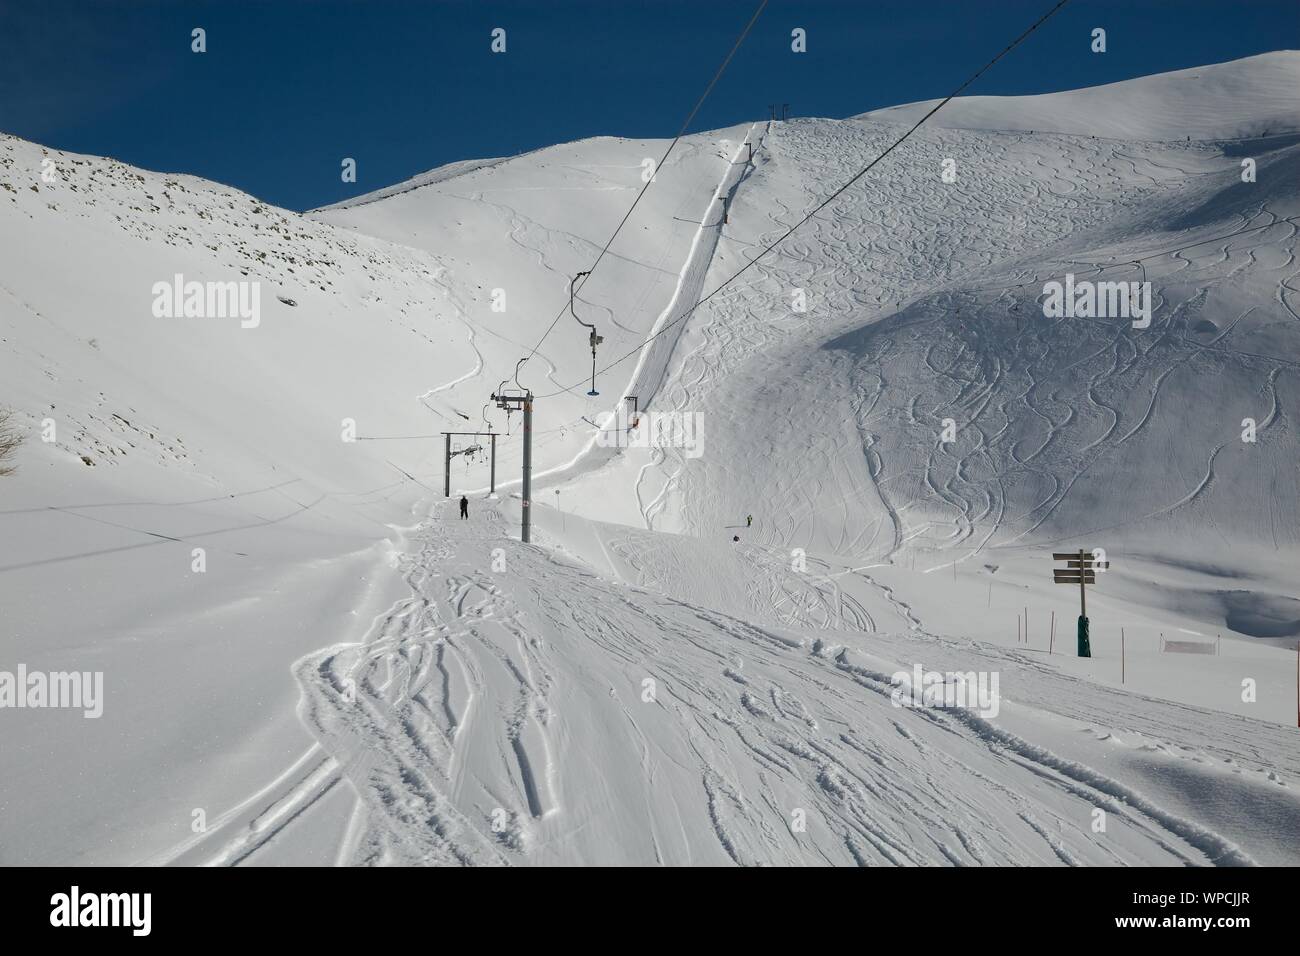 Skiing slopes sunny weather Stock Photo